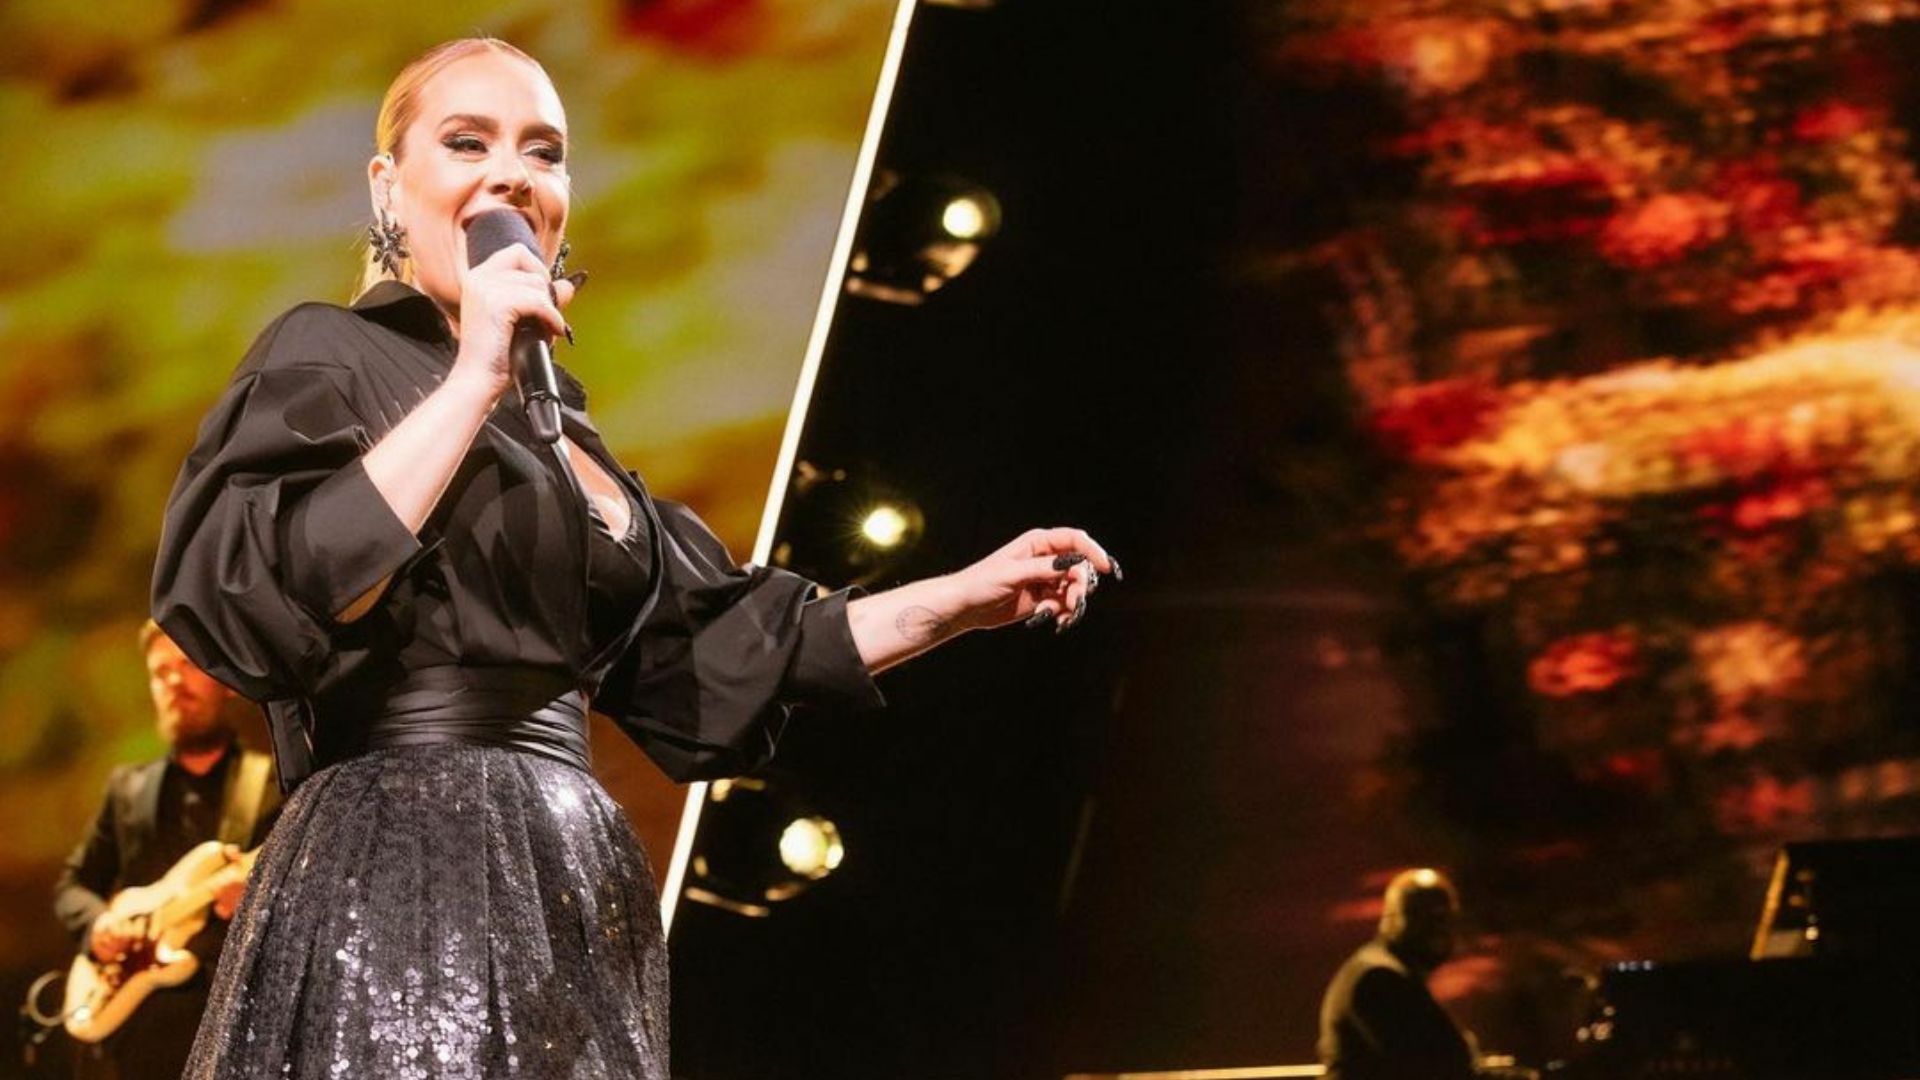 Adele, una de las artistas británicas más destacadas en la actualidad con ventas que superan los 120 millones de dólares en discos y sencillos, ha elegido Las Vegas como su lugar de residencia temporal, donde ha establecido un contacto cercano con sus admiradores mexicanos.